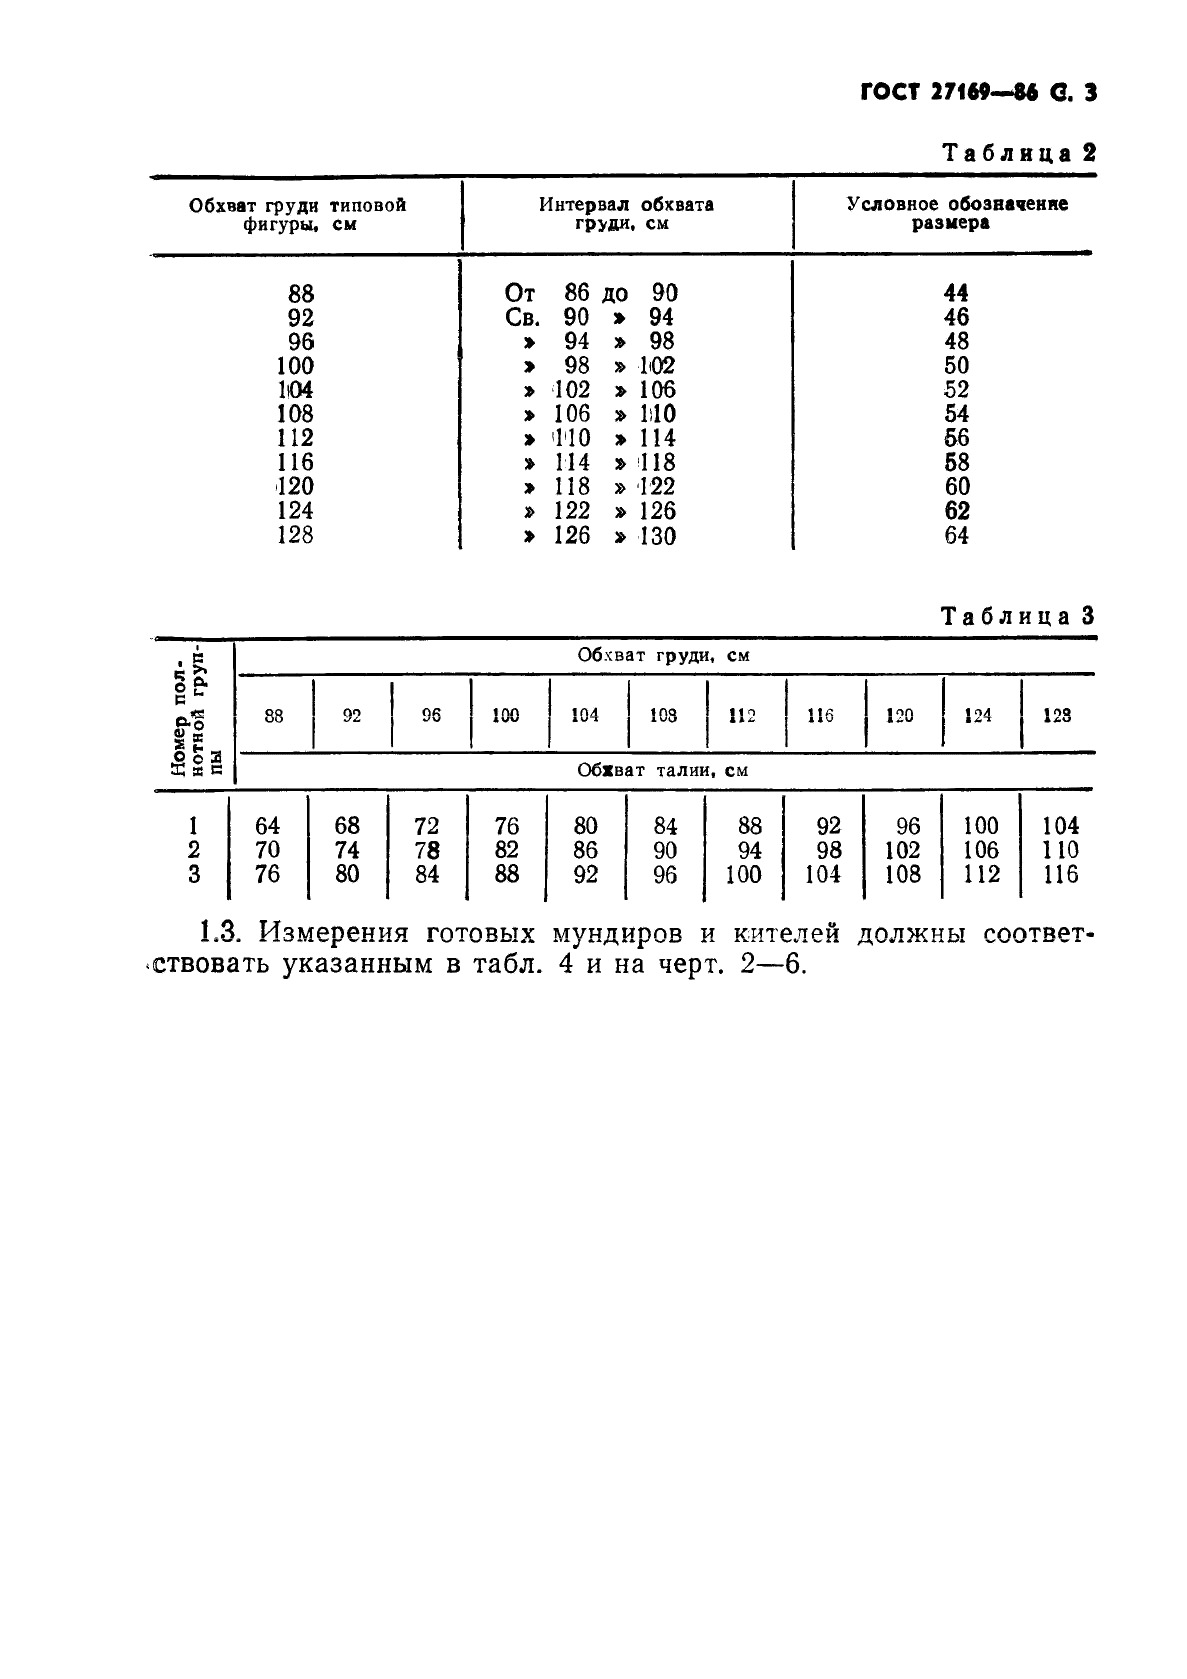 ГОСТ 27169-86 Мундир и китель для офицеров и прапорщиков Советской Армии. Технические условия (фото 5 из 42)